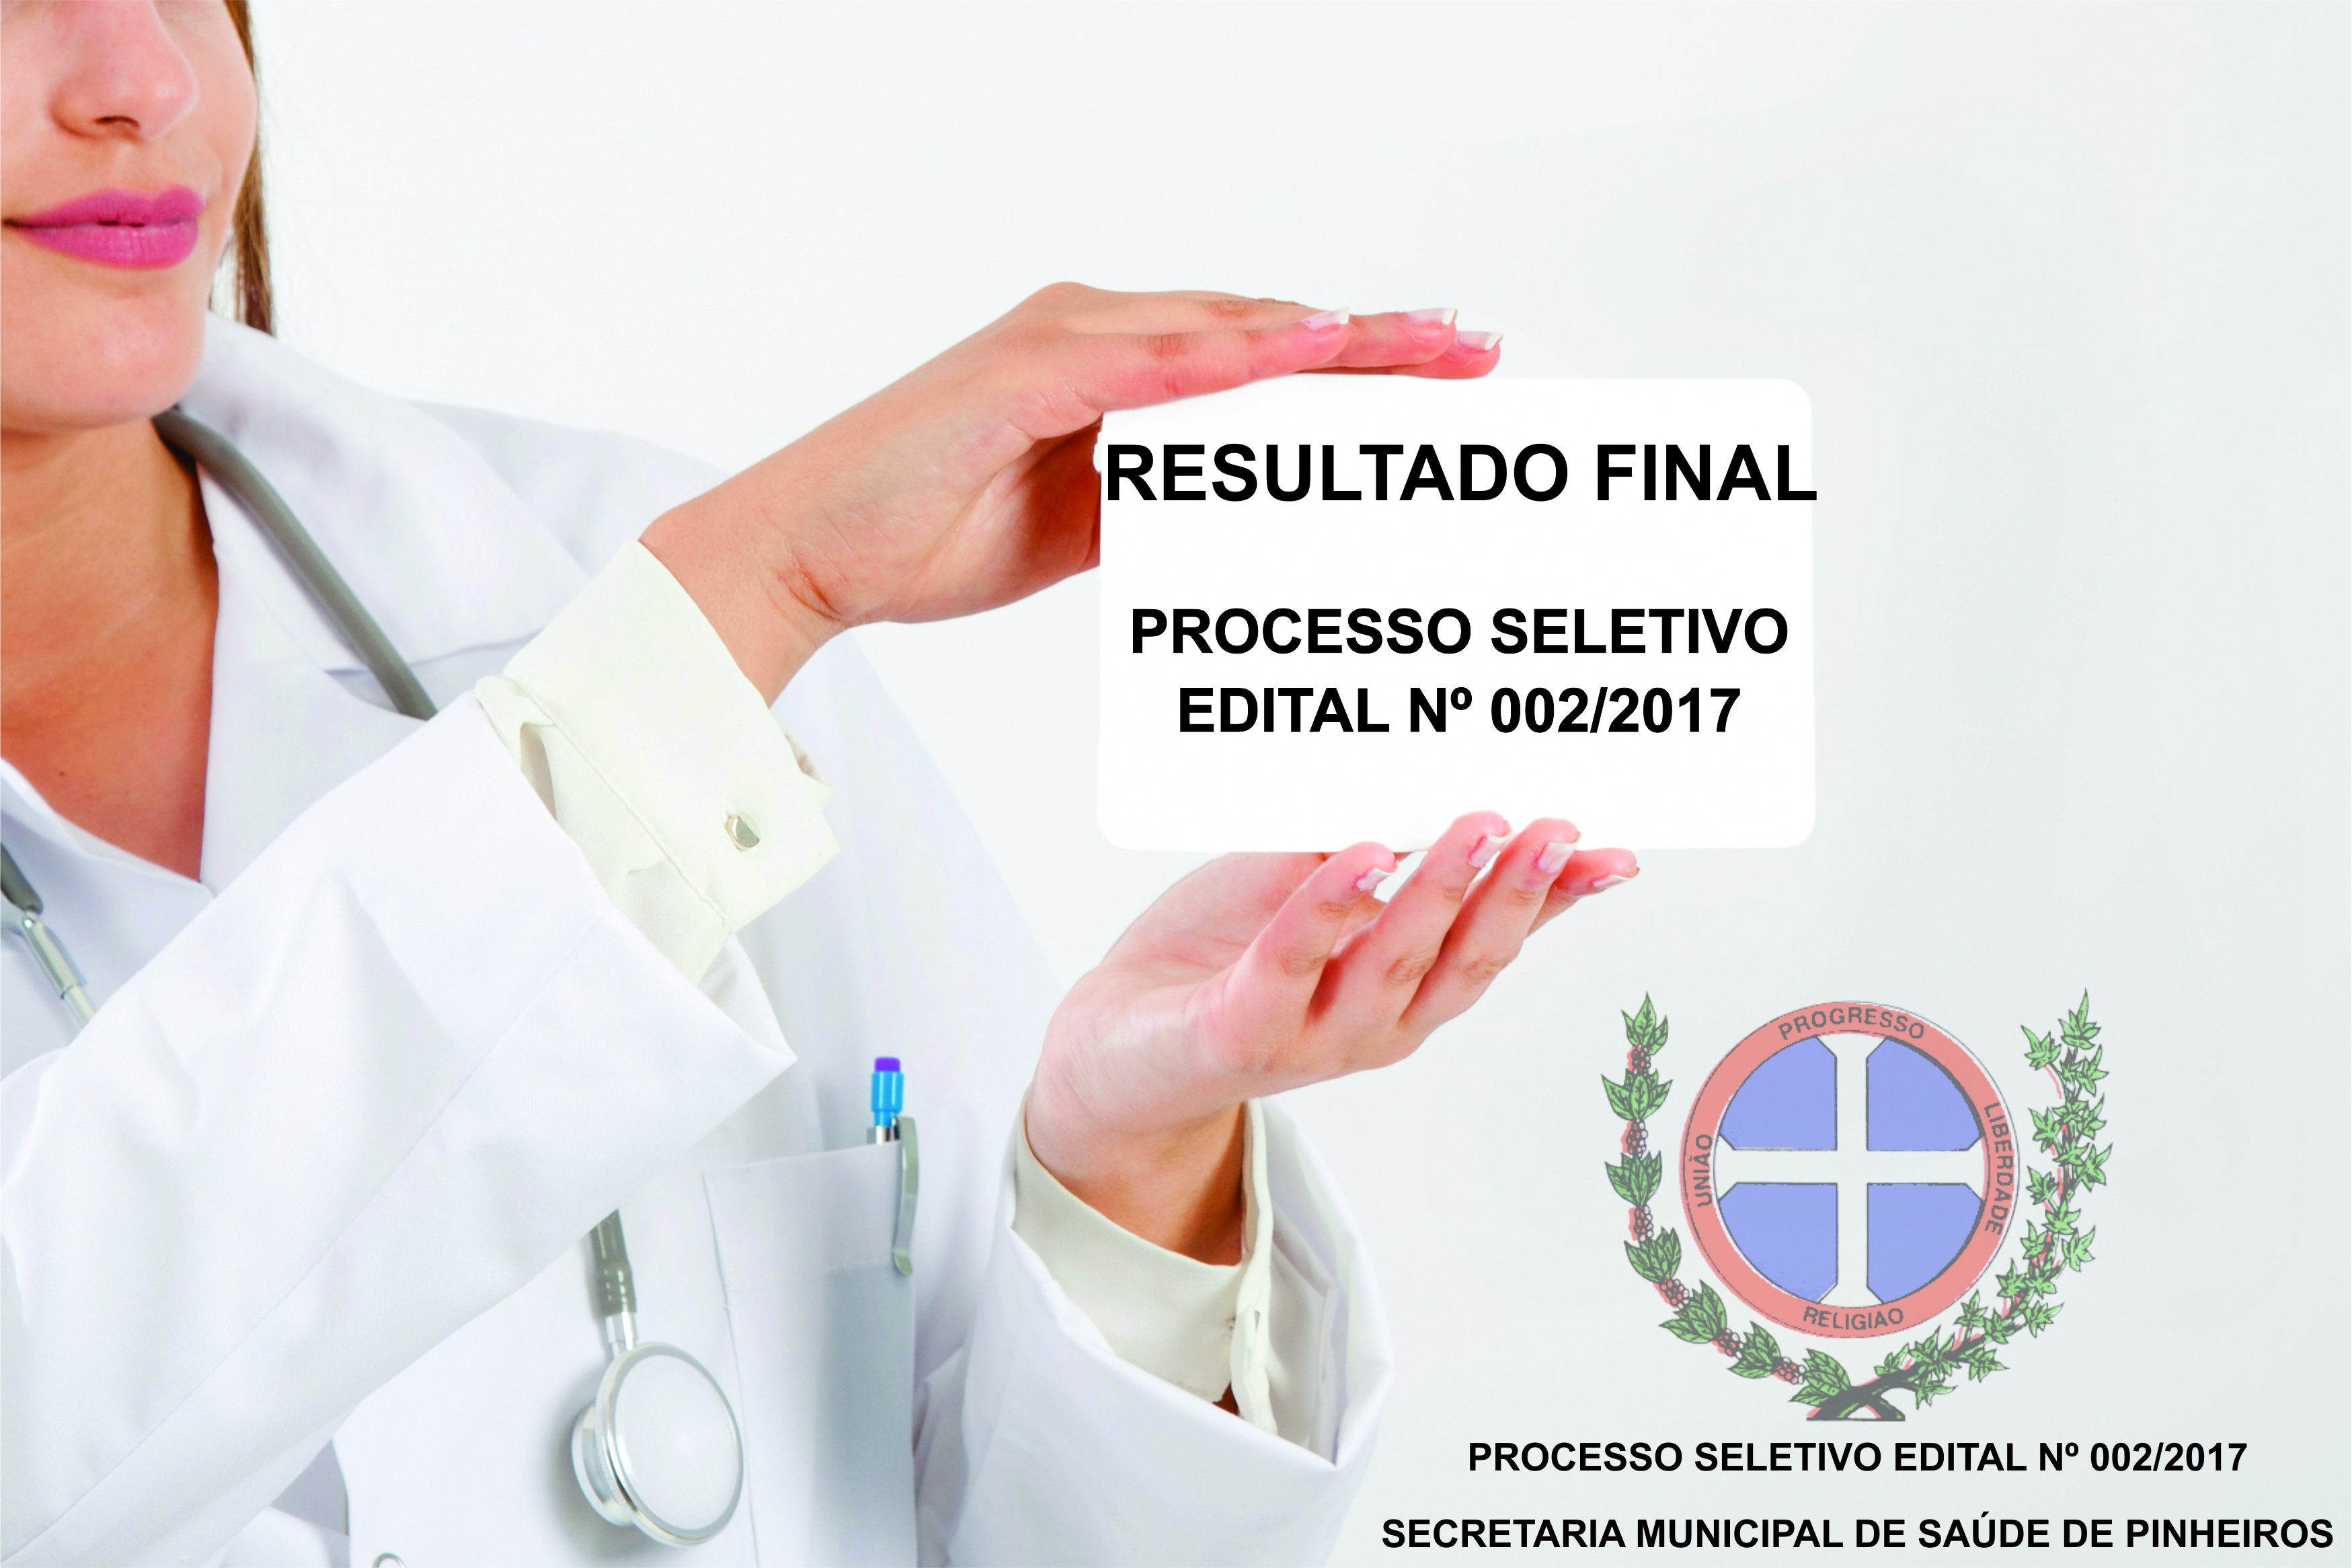 RESULTADO FINAL PROCESSO SELETIVO EDITAL Nº 002/2017 SECRETARIA MUNICIPAL DE SAÚDE DE PINHEIROS